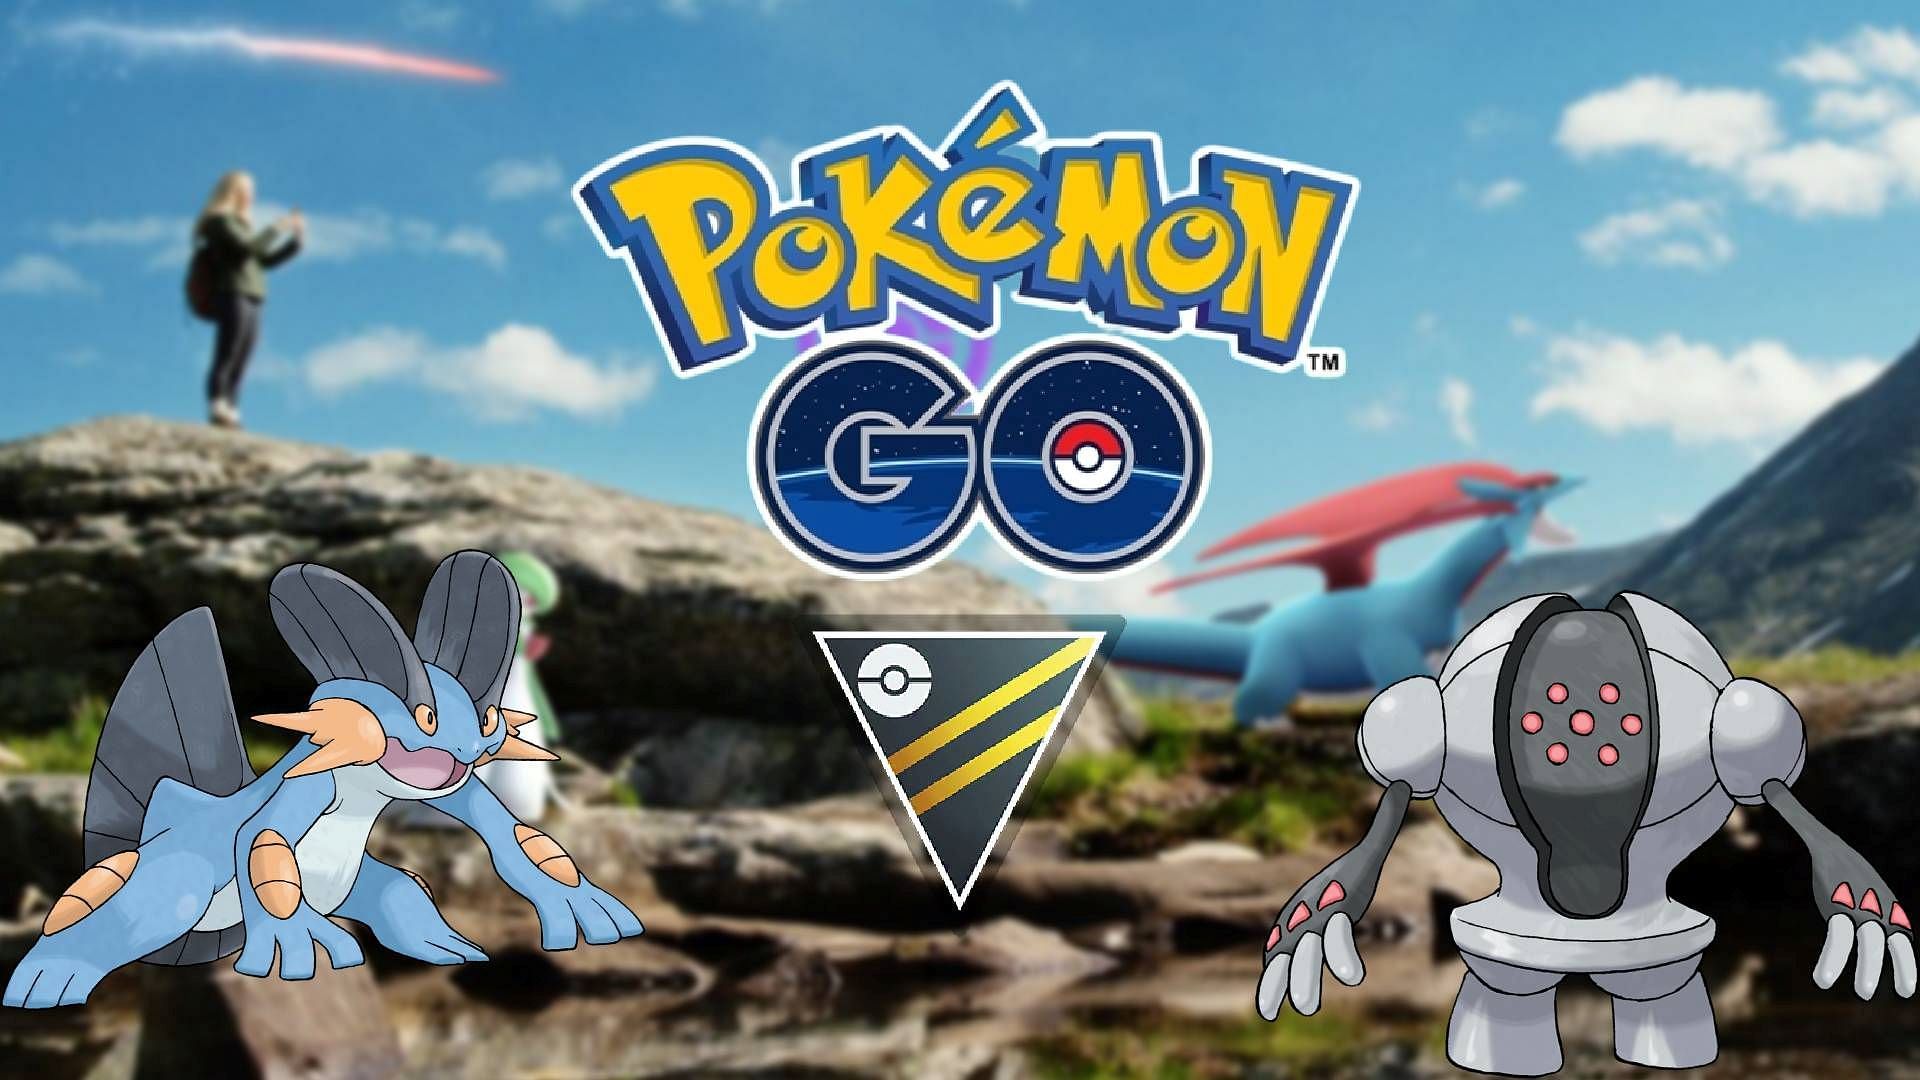 Official artwork for Pokemon GO